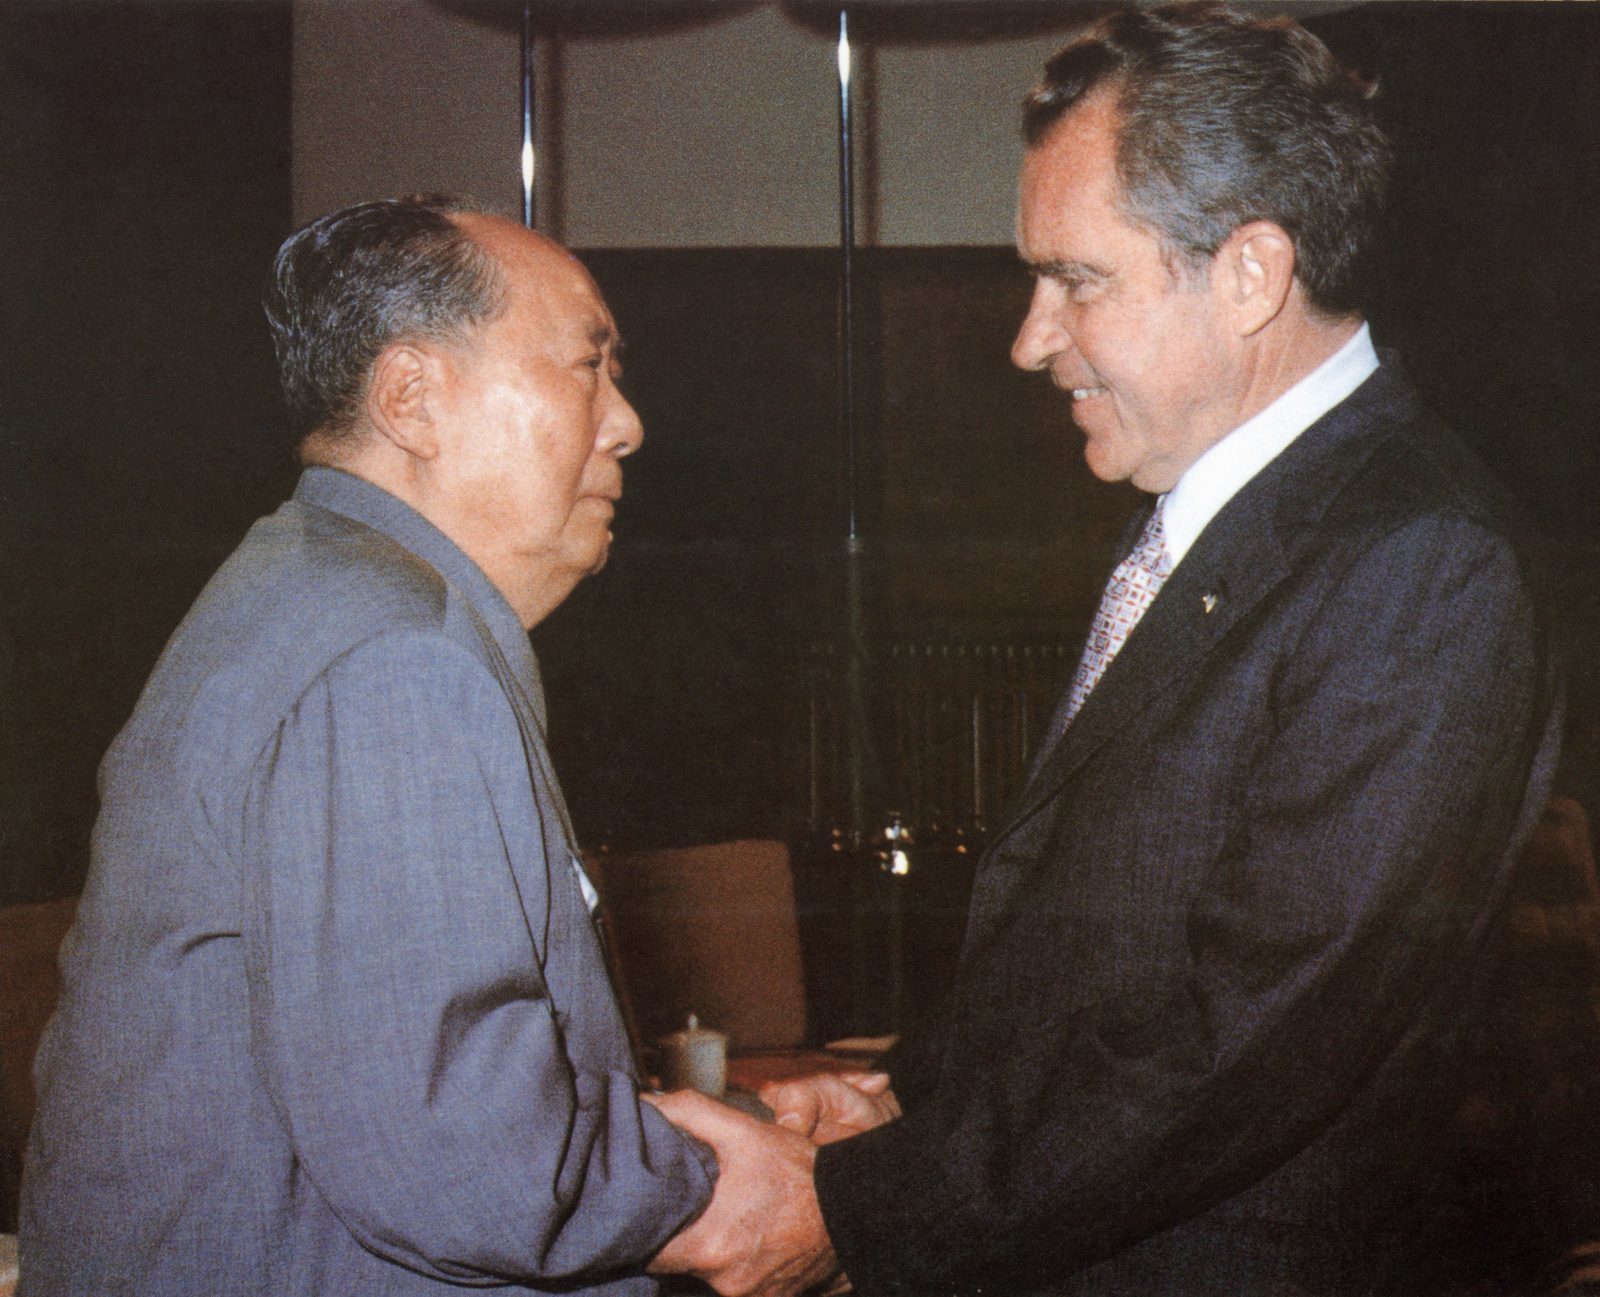 Mao Zedong and Nixon